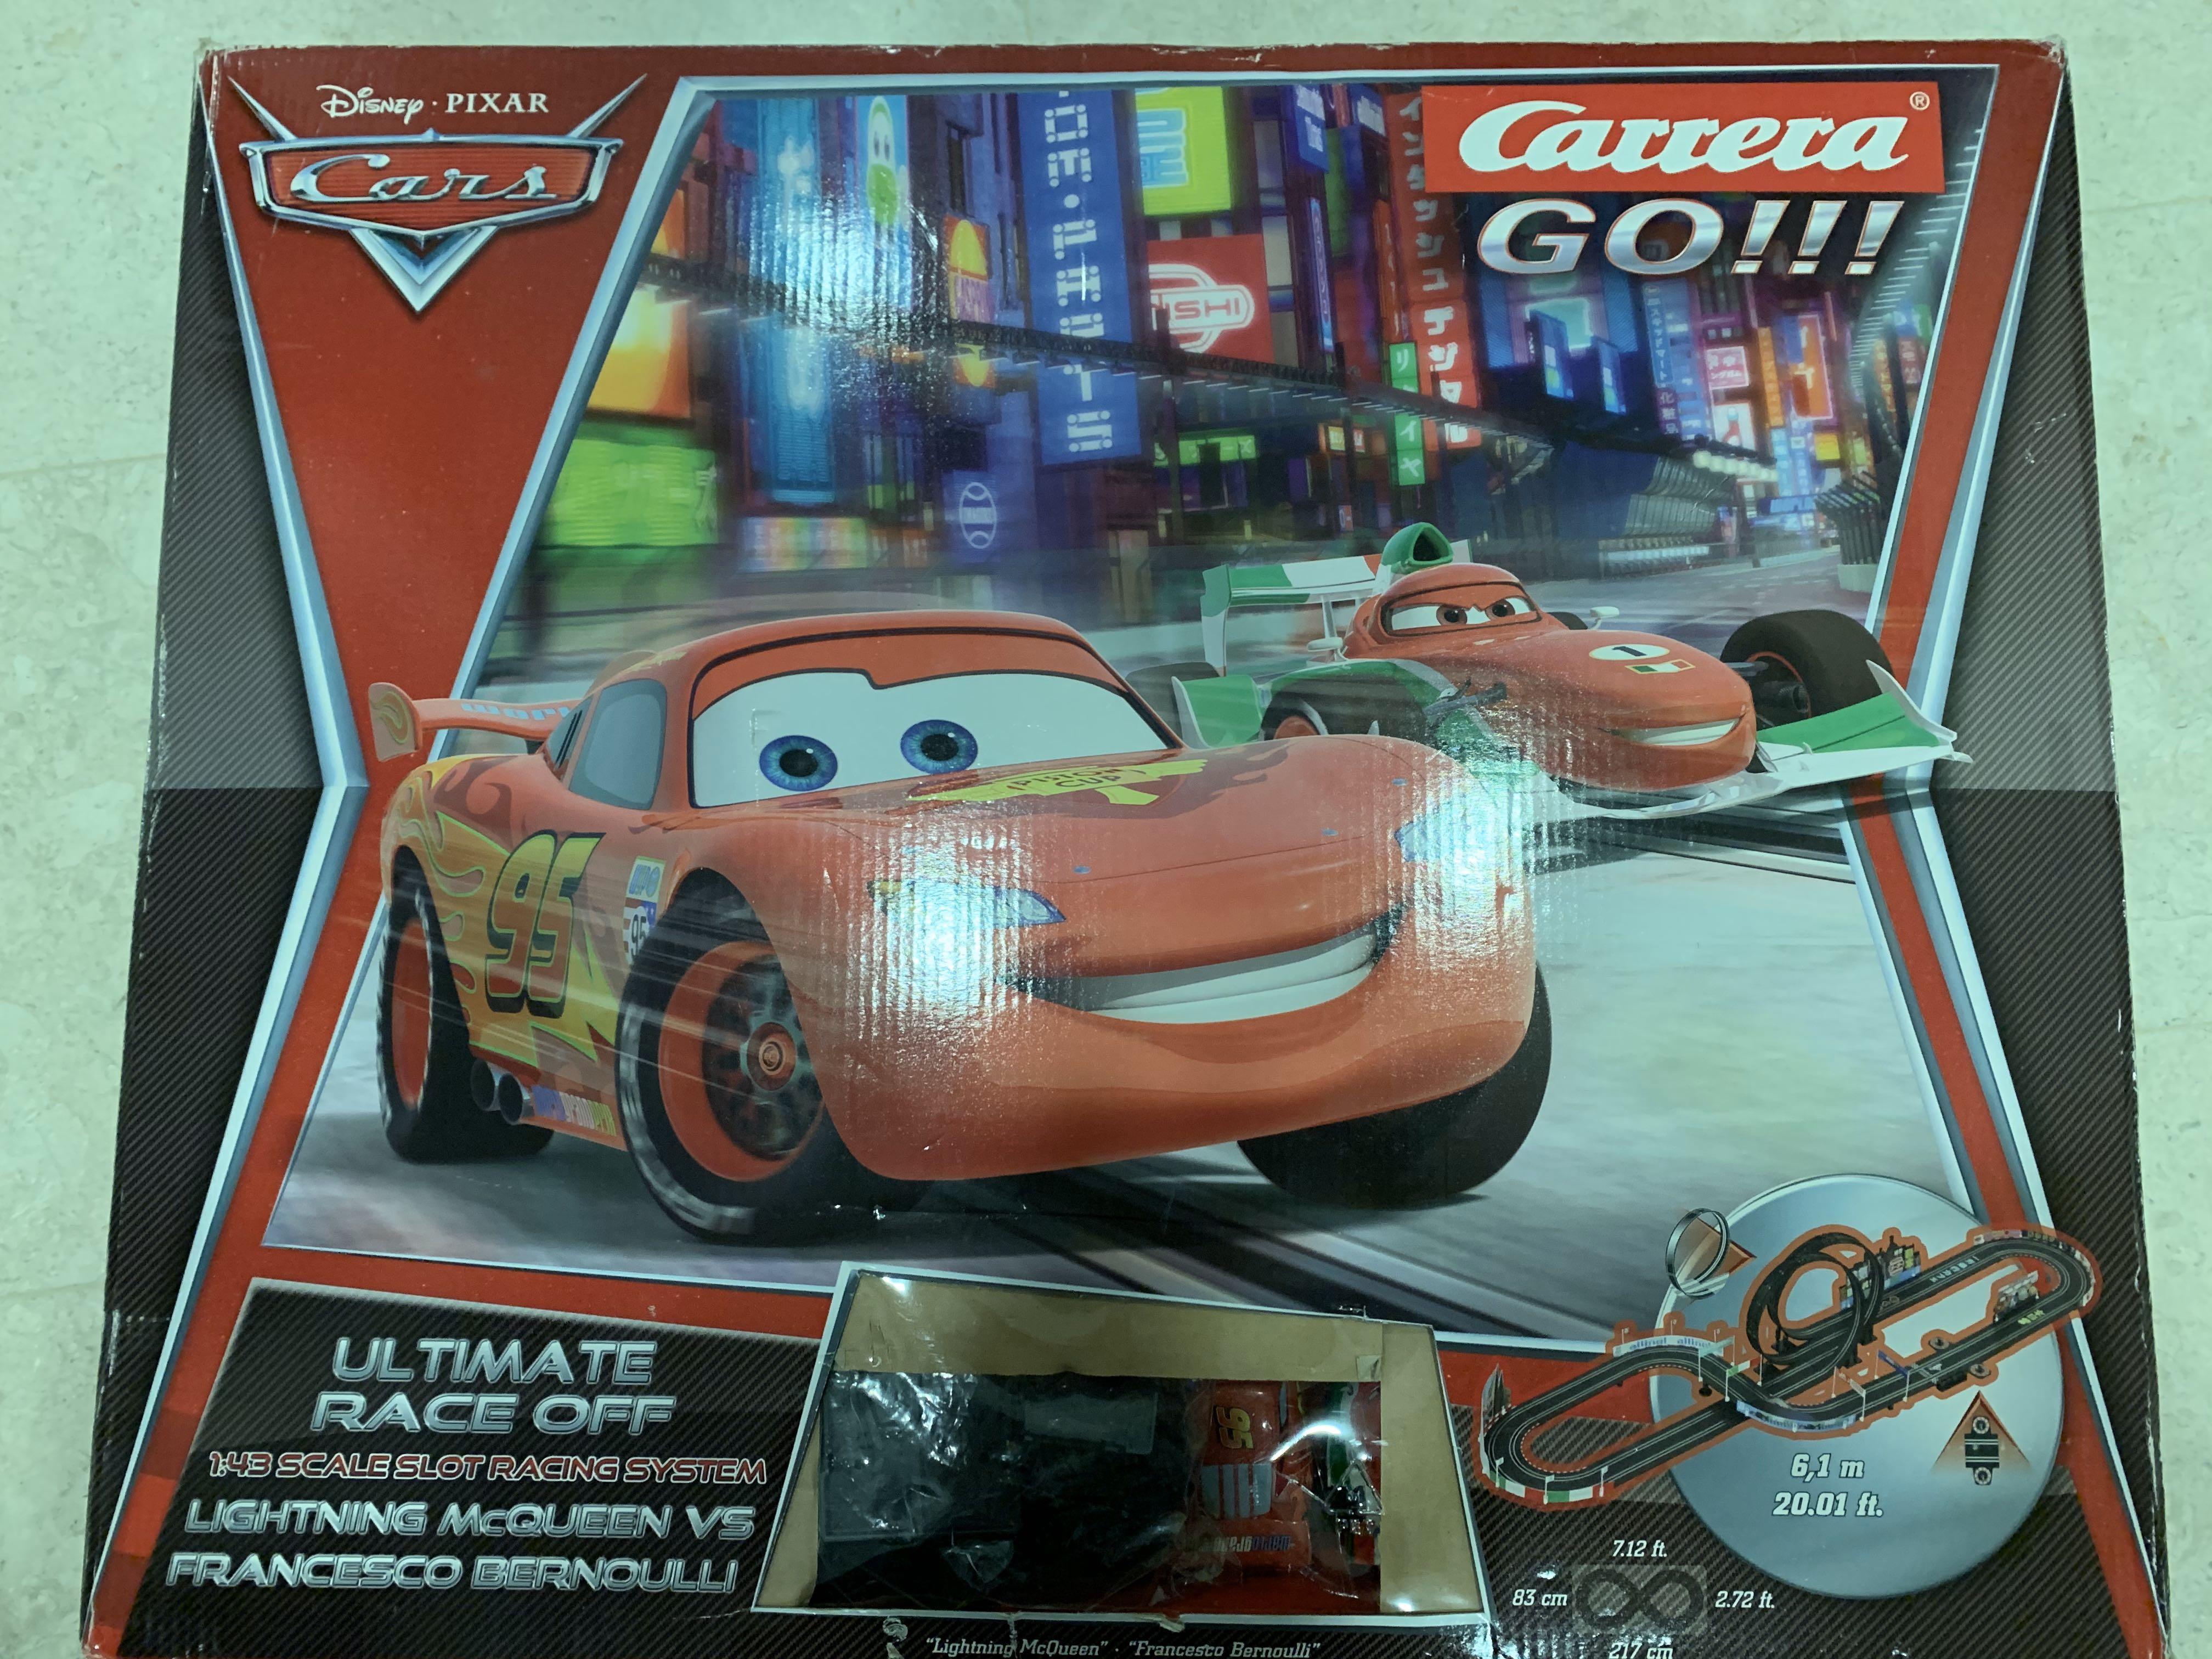 Carrera GO!!! Ultimate Race Off - Lightning McQueen vs Francesco Bernoulli,  Hobbies & Toys, Toys & Games on Carousell